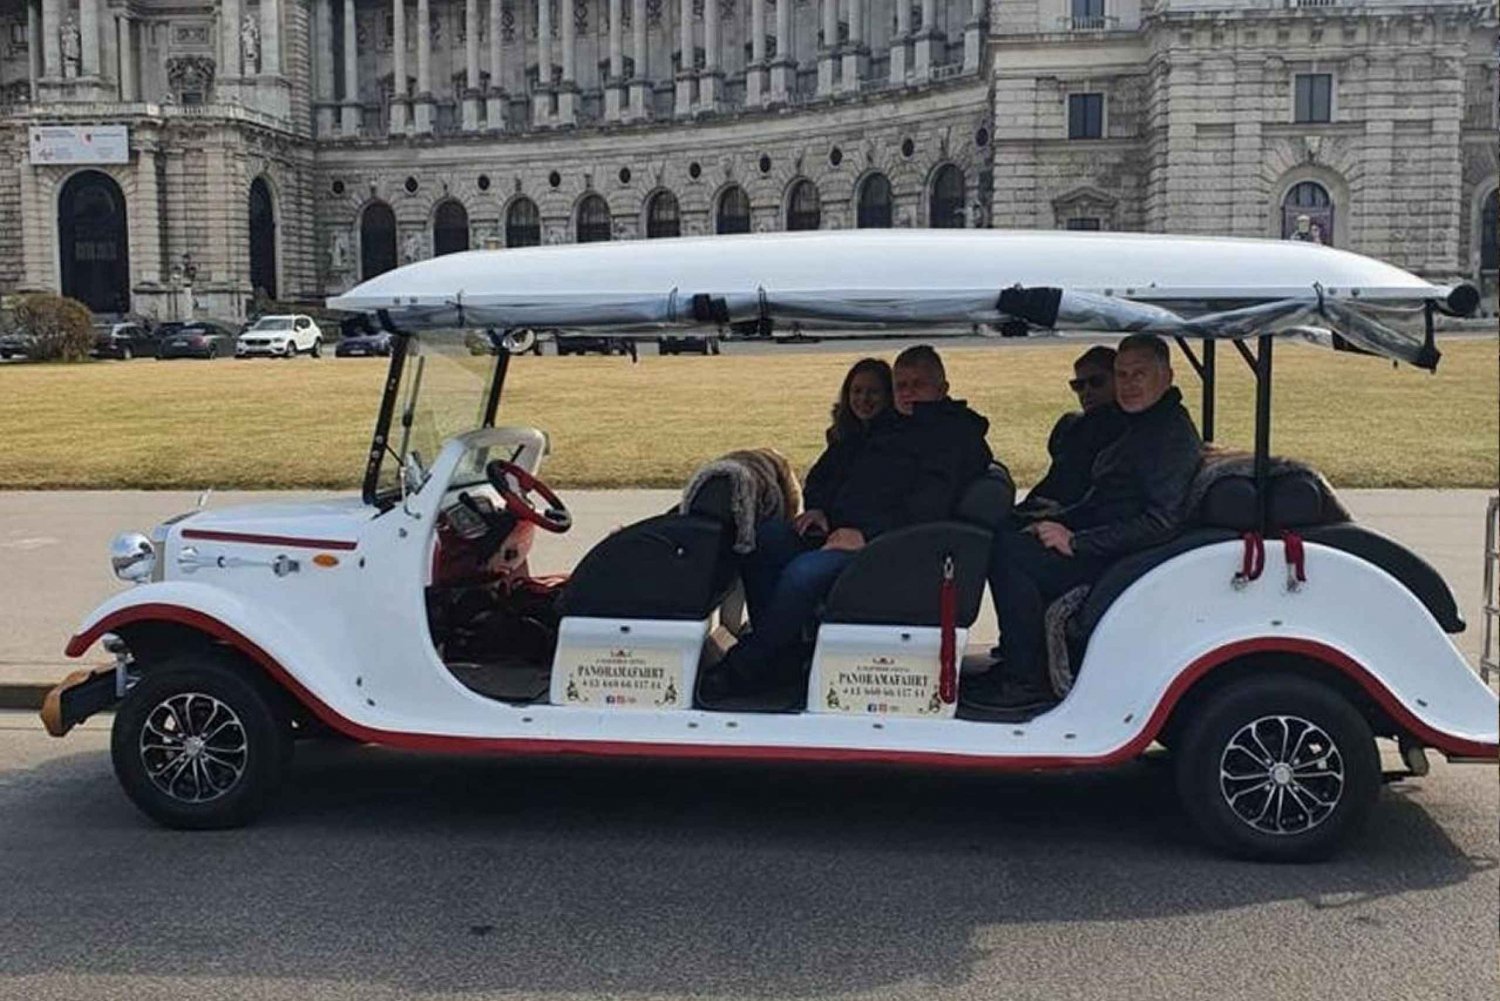 Wenen: sightseeingtour in een 8-persoons elektrische klassieke auto